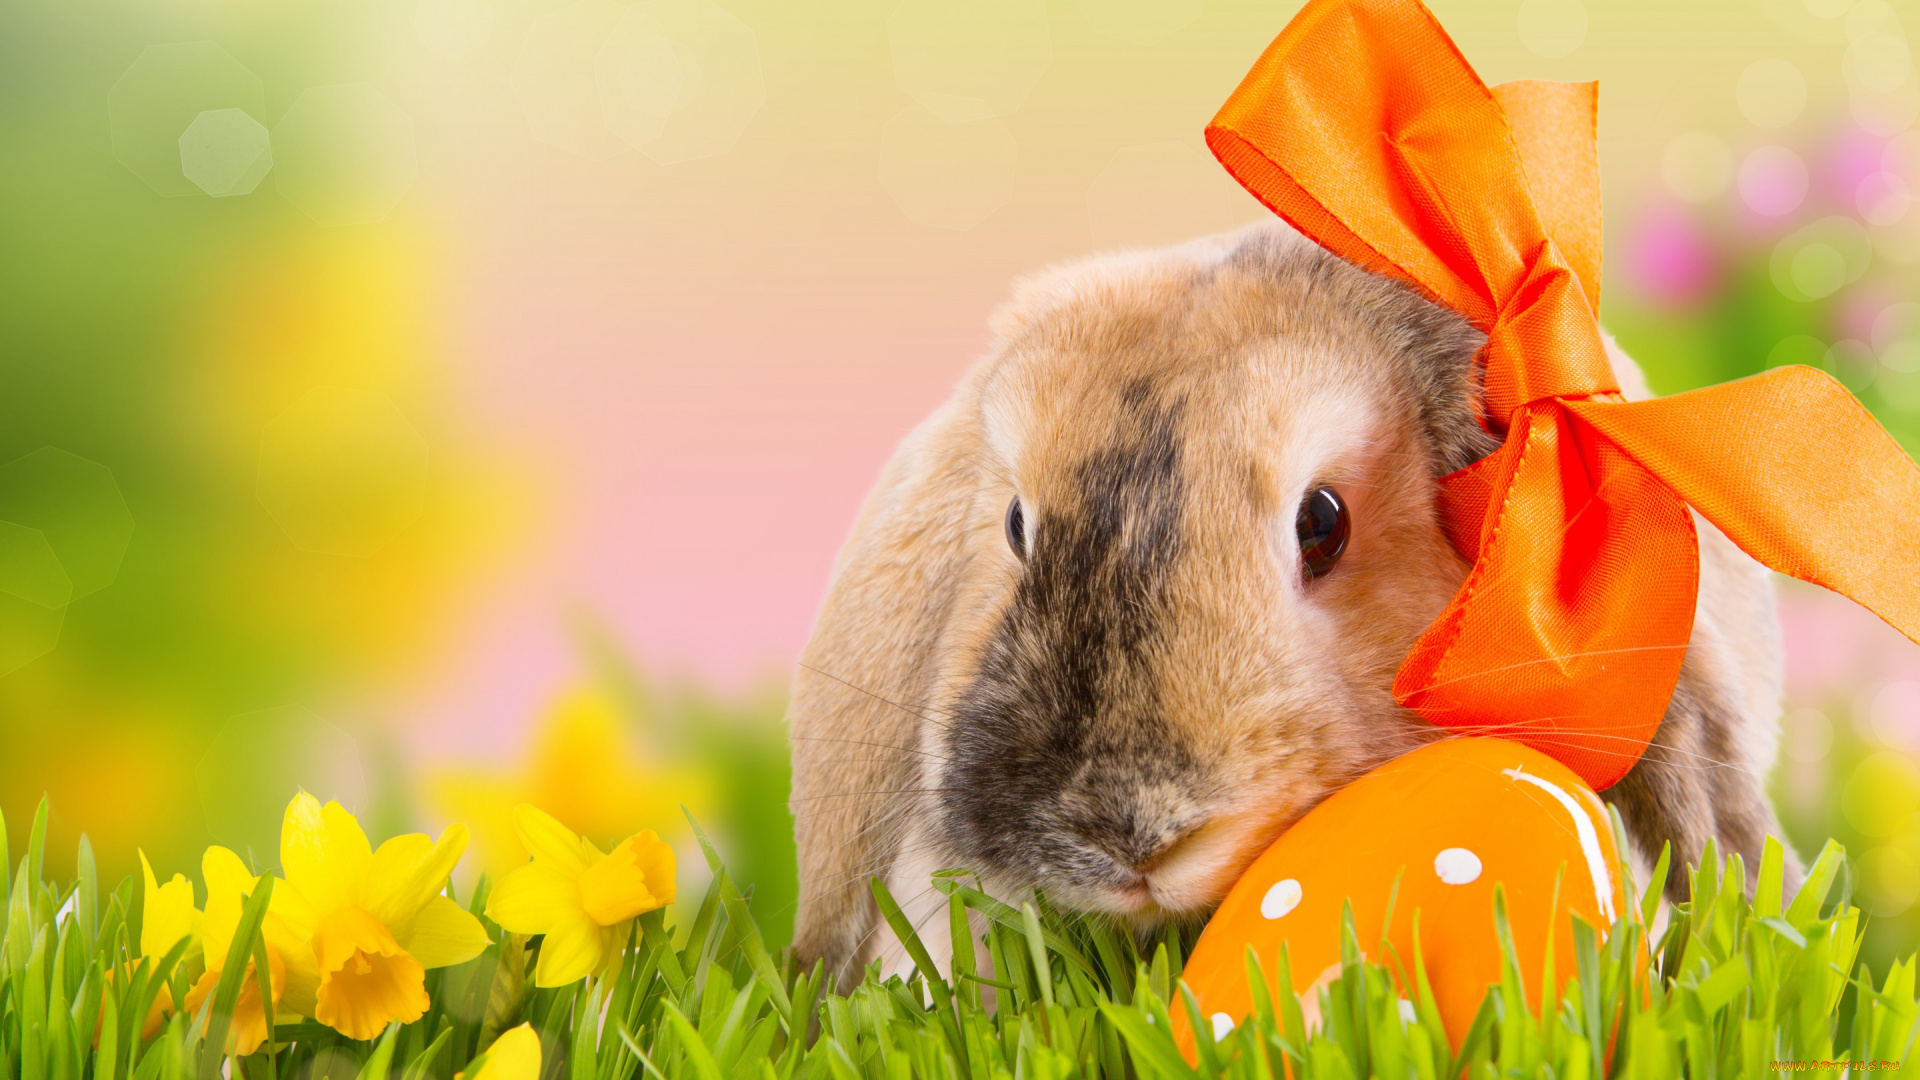 животные, кролики, , зайцы, весна, трава, боке, природа, яйцо, праздник, цветы, бант, easter, пасха, нарциссы, кролик